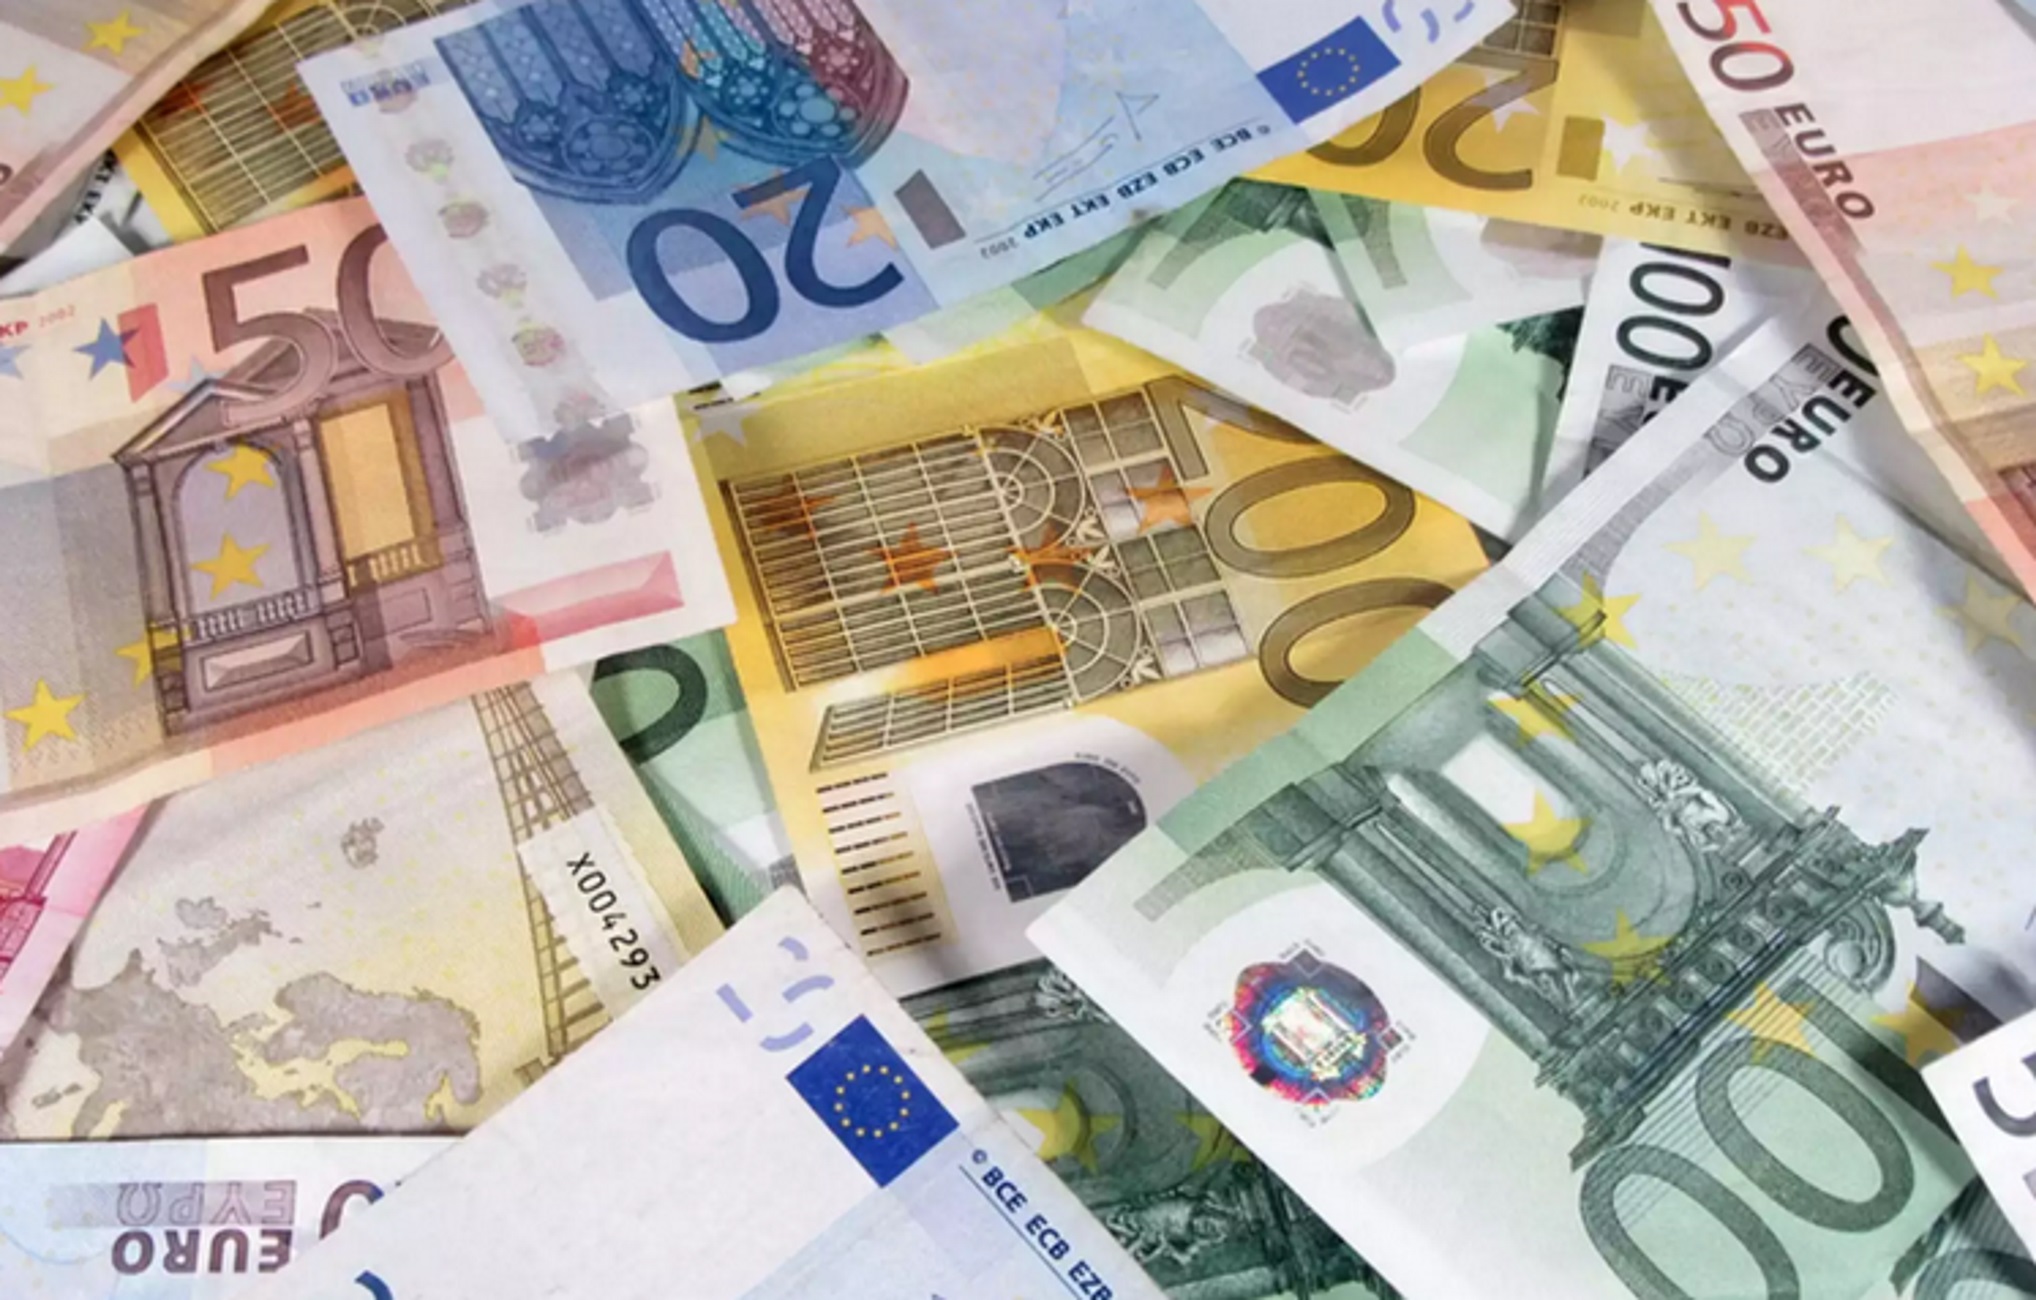 Φλώρινα: Έκλεψε 400 ευρώ από τραπεζικό λογαριασμό 22χρονης, εξιχνιάστηκε η ηλεκτρονική απάτη